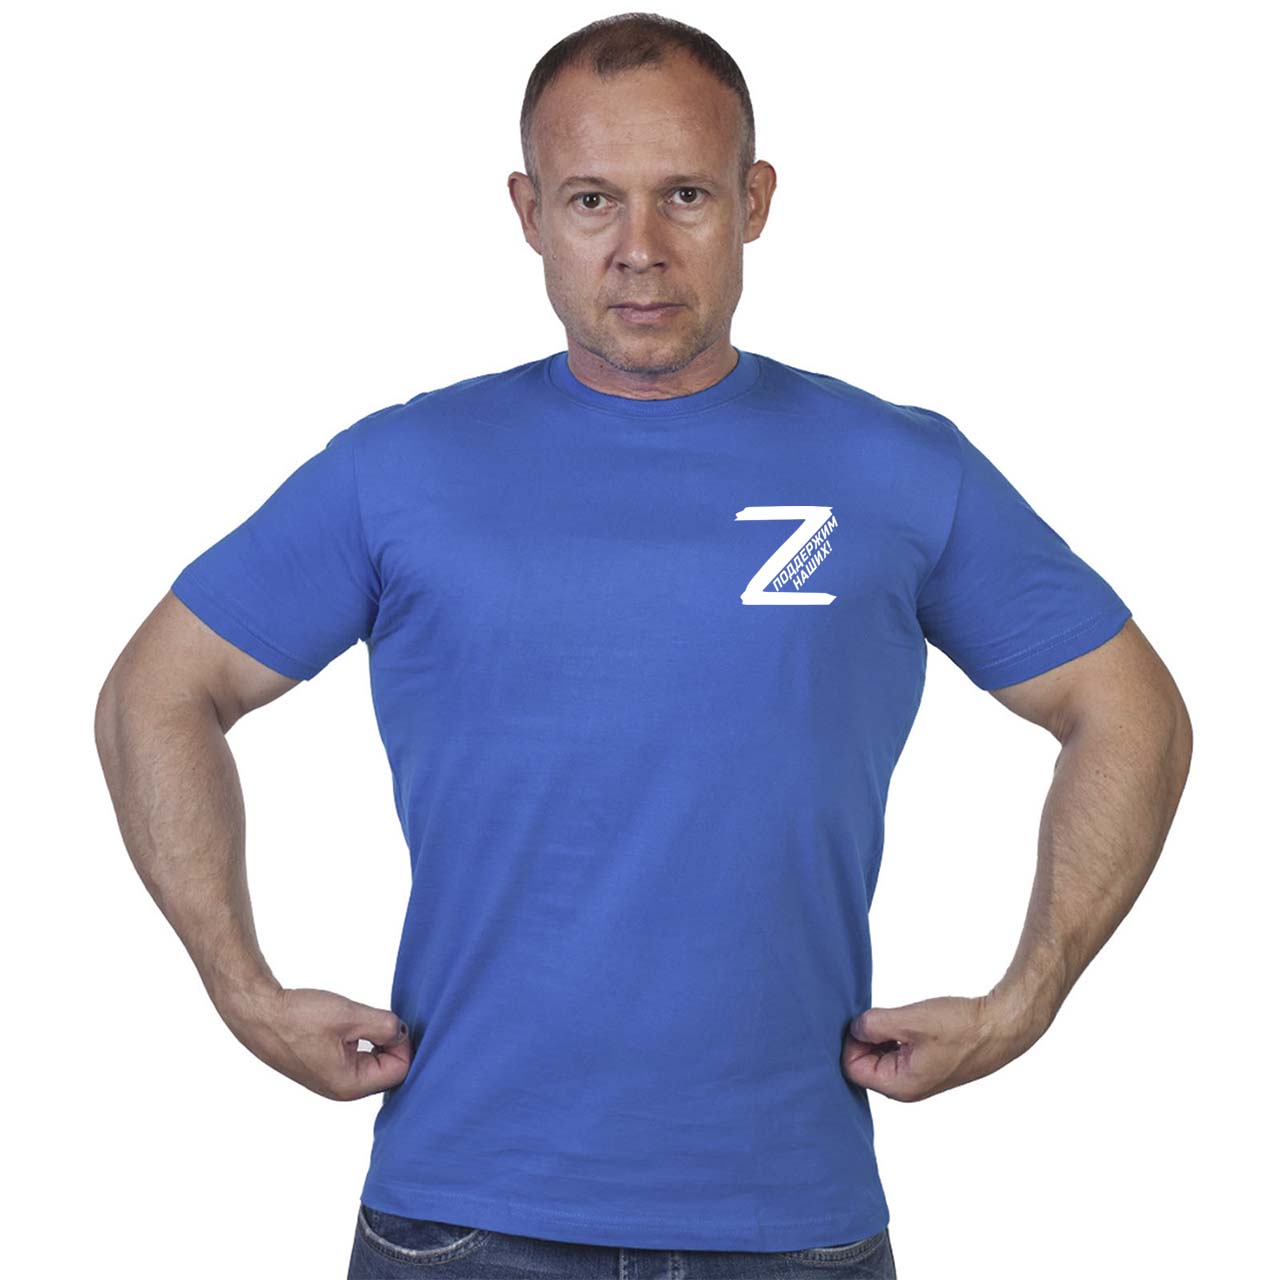 Васильковая футболка с трансфером буква «Z» – поддержим наших!